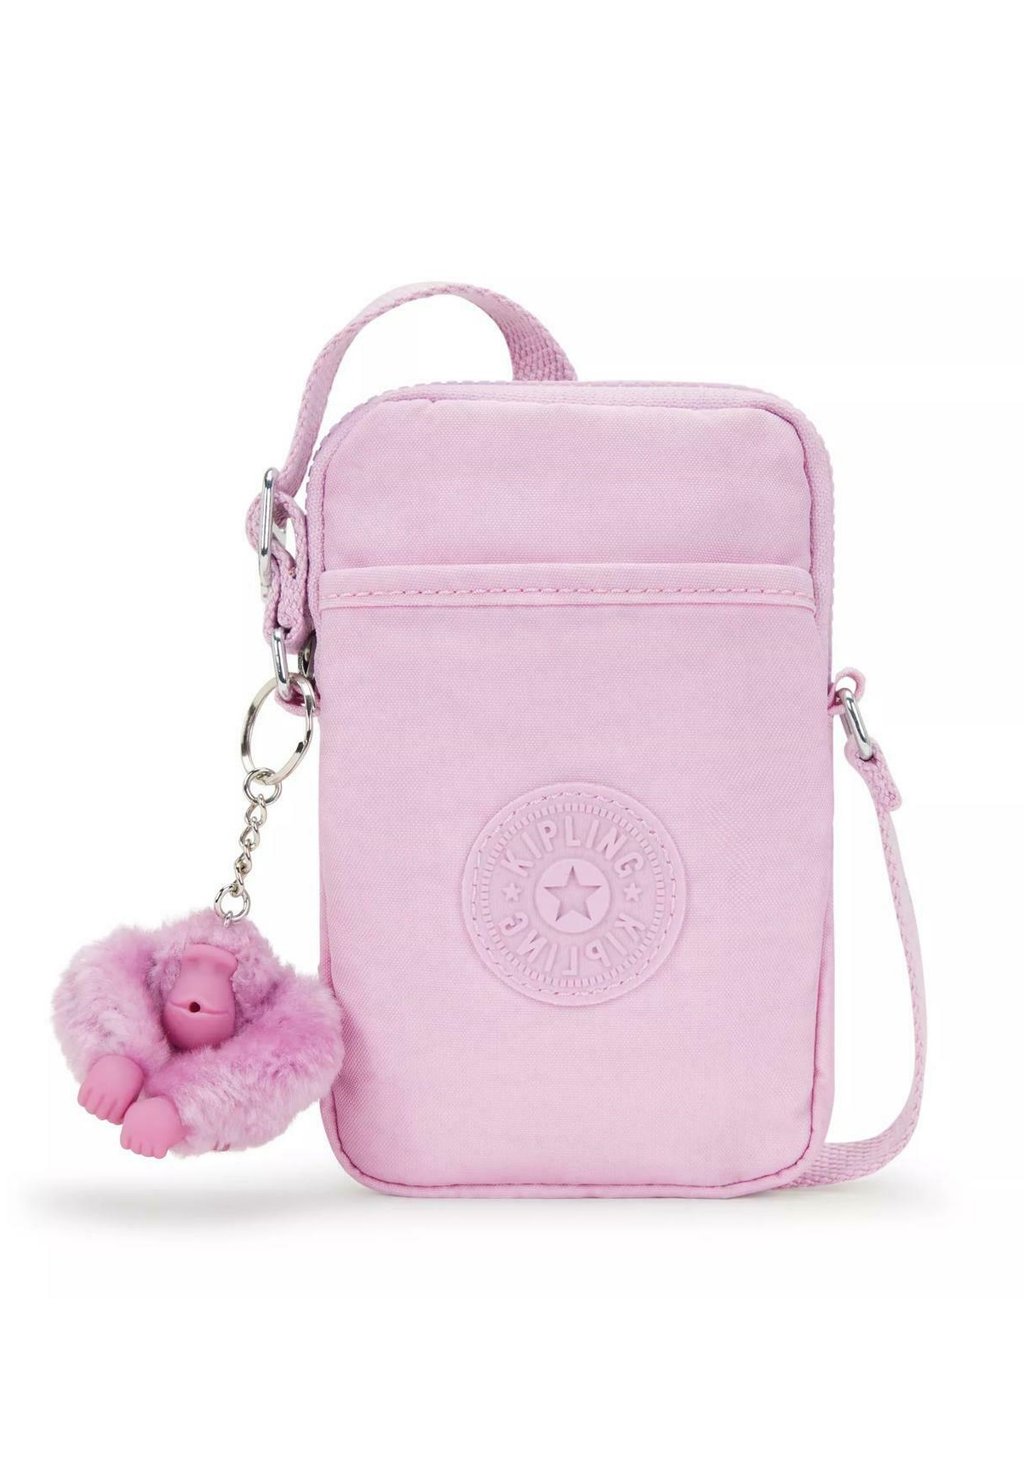 Сумка через плечо TALLY Kipling, цвет blooming pink сумка через плечо aras kipling цвет valentine pink